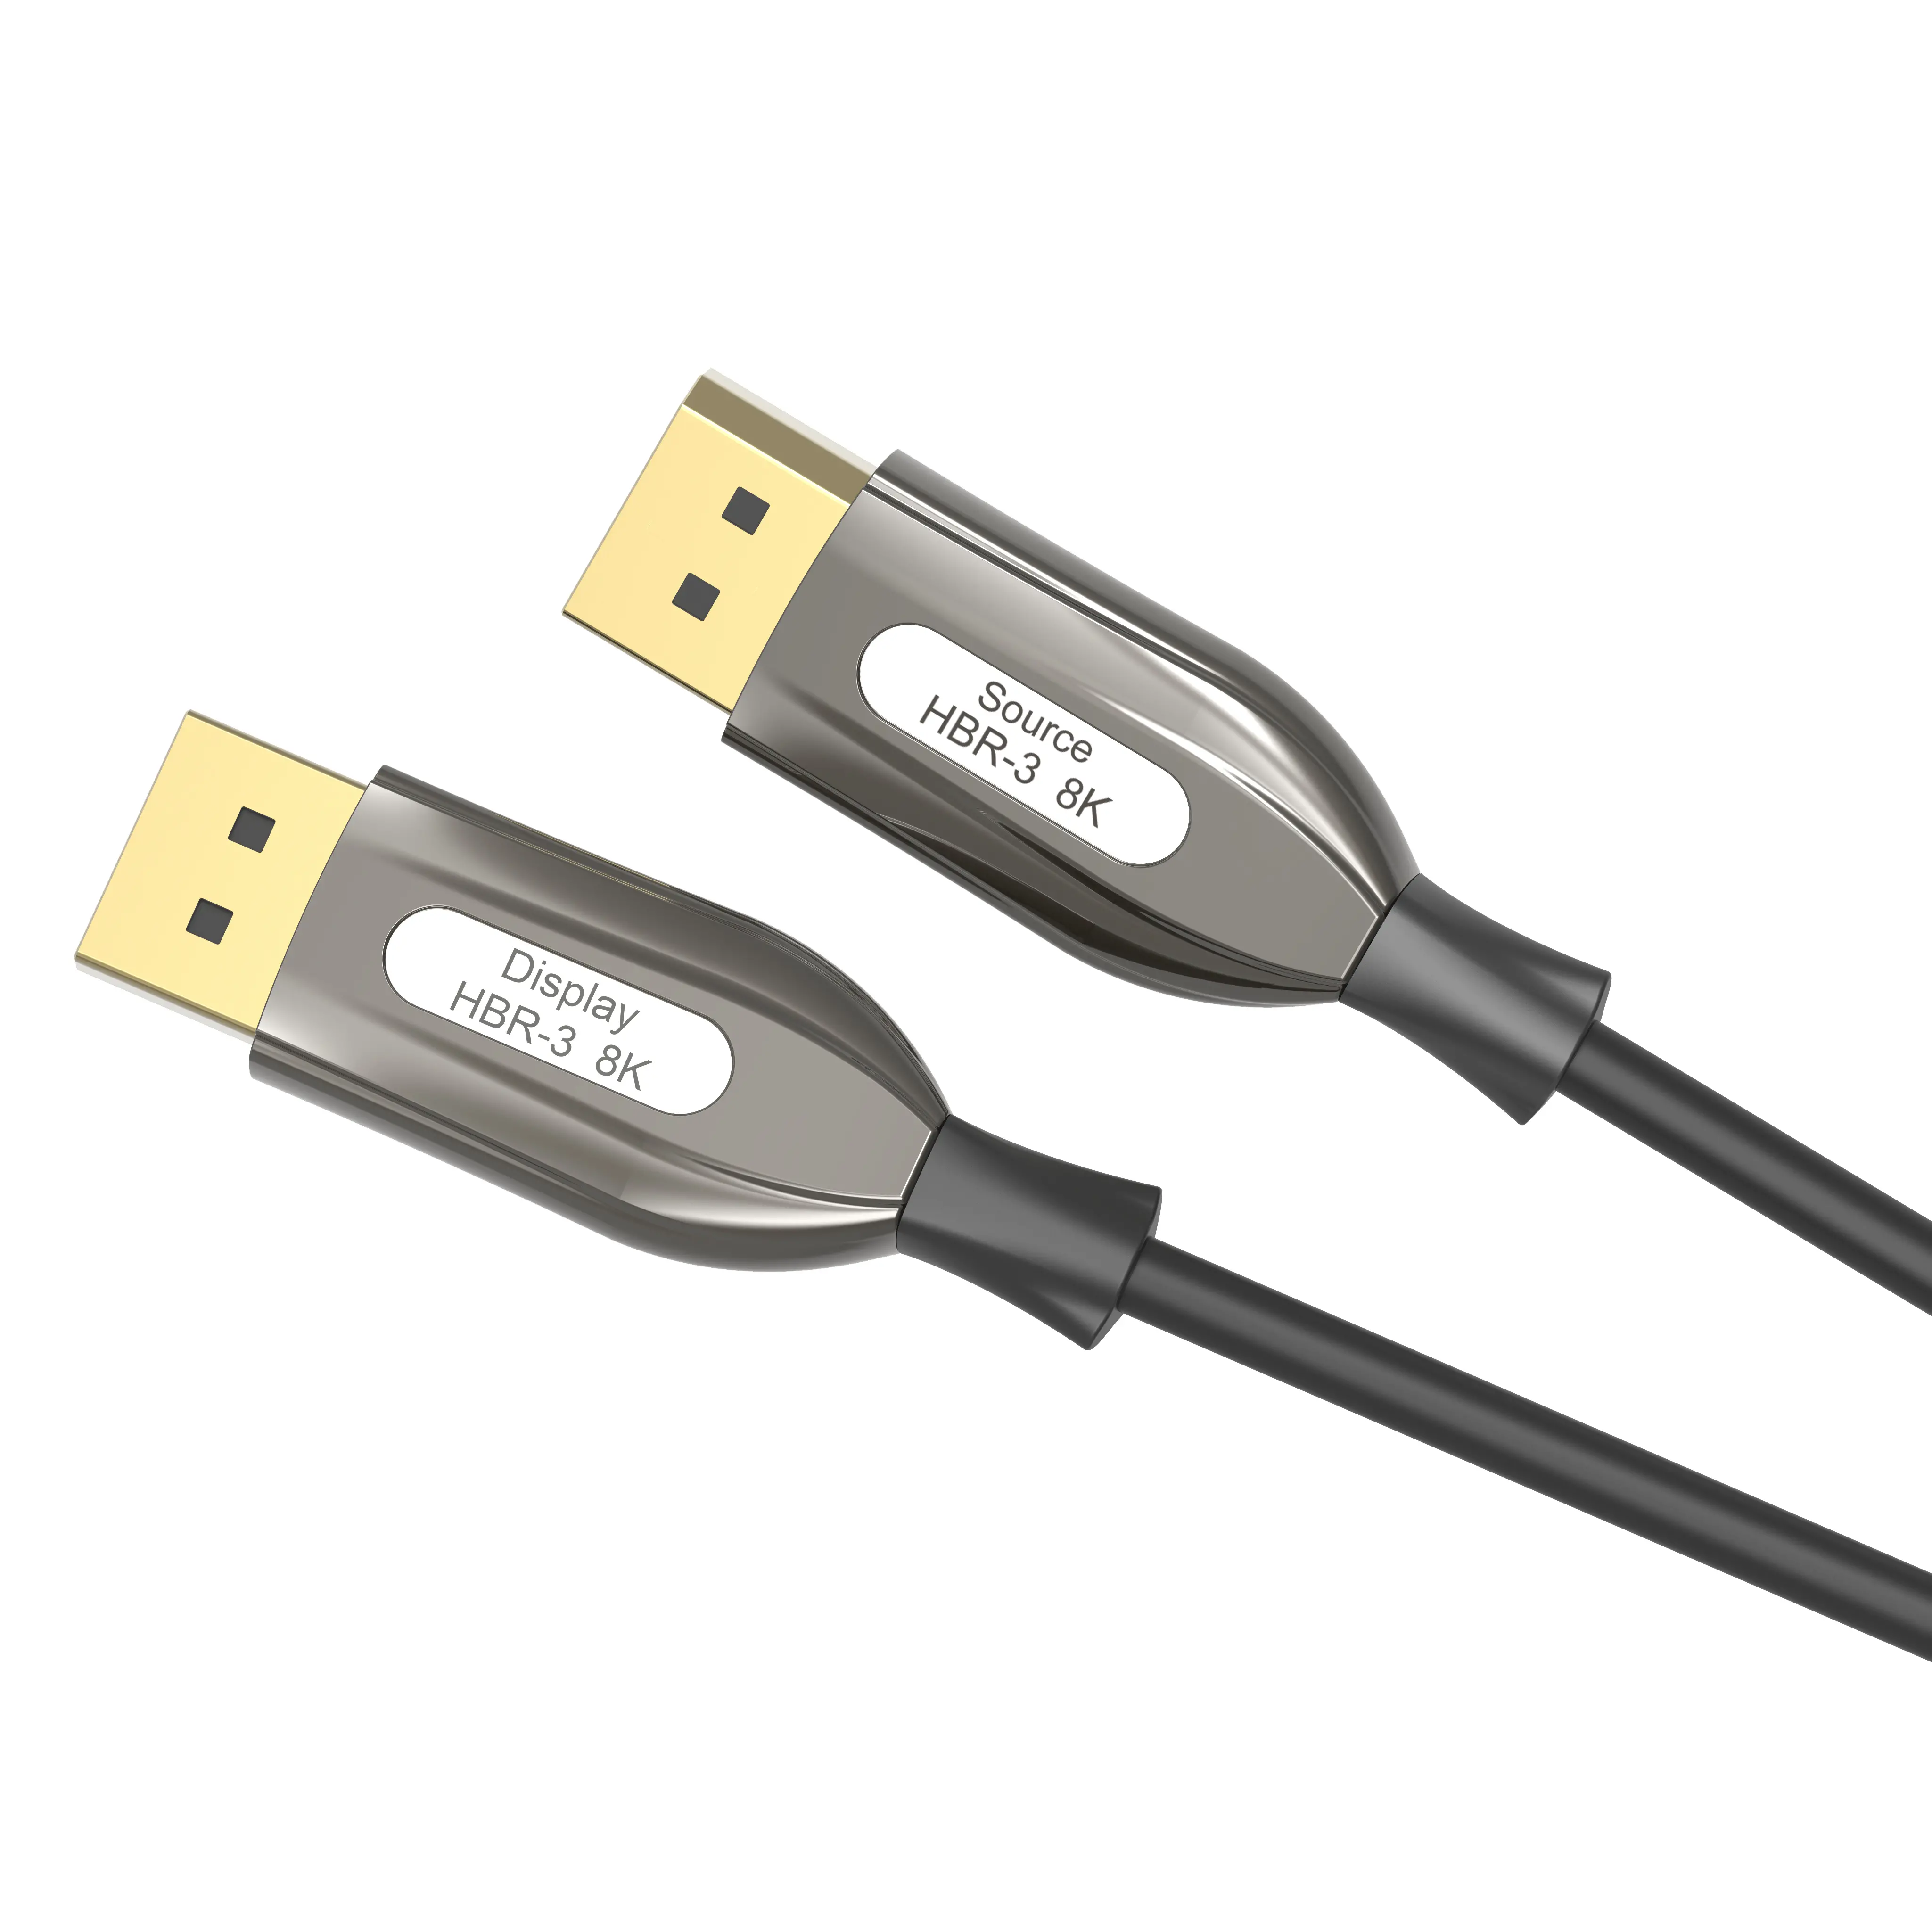 DisplayPort 1.4 cables